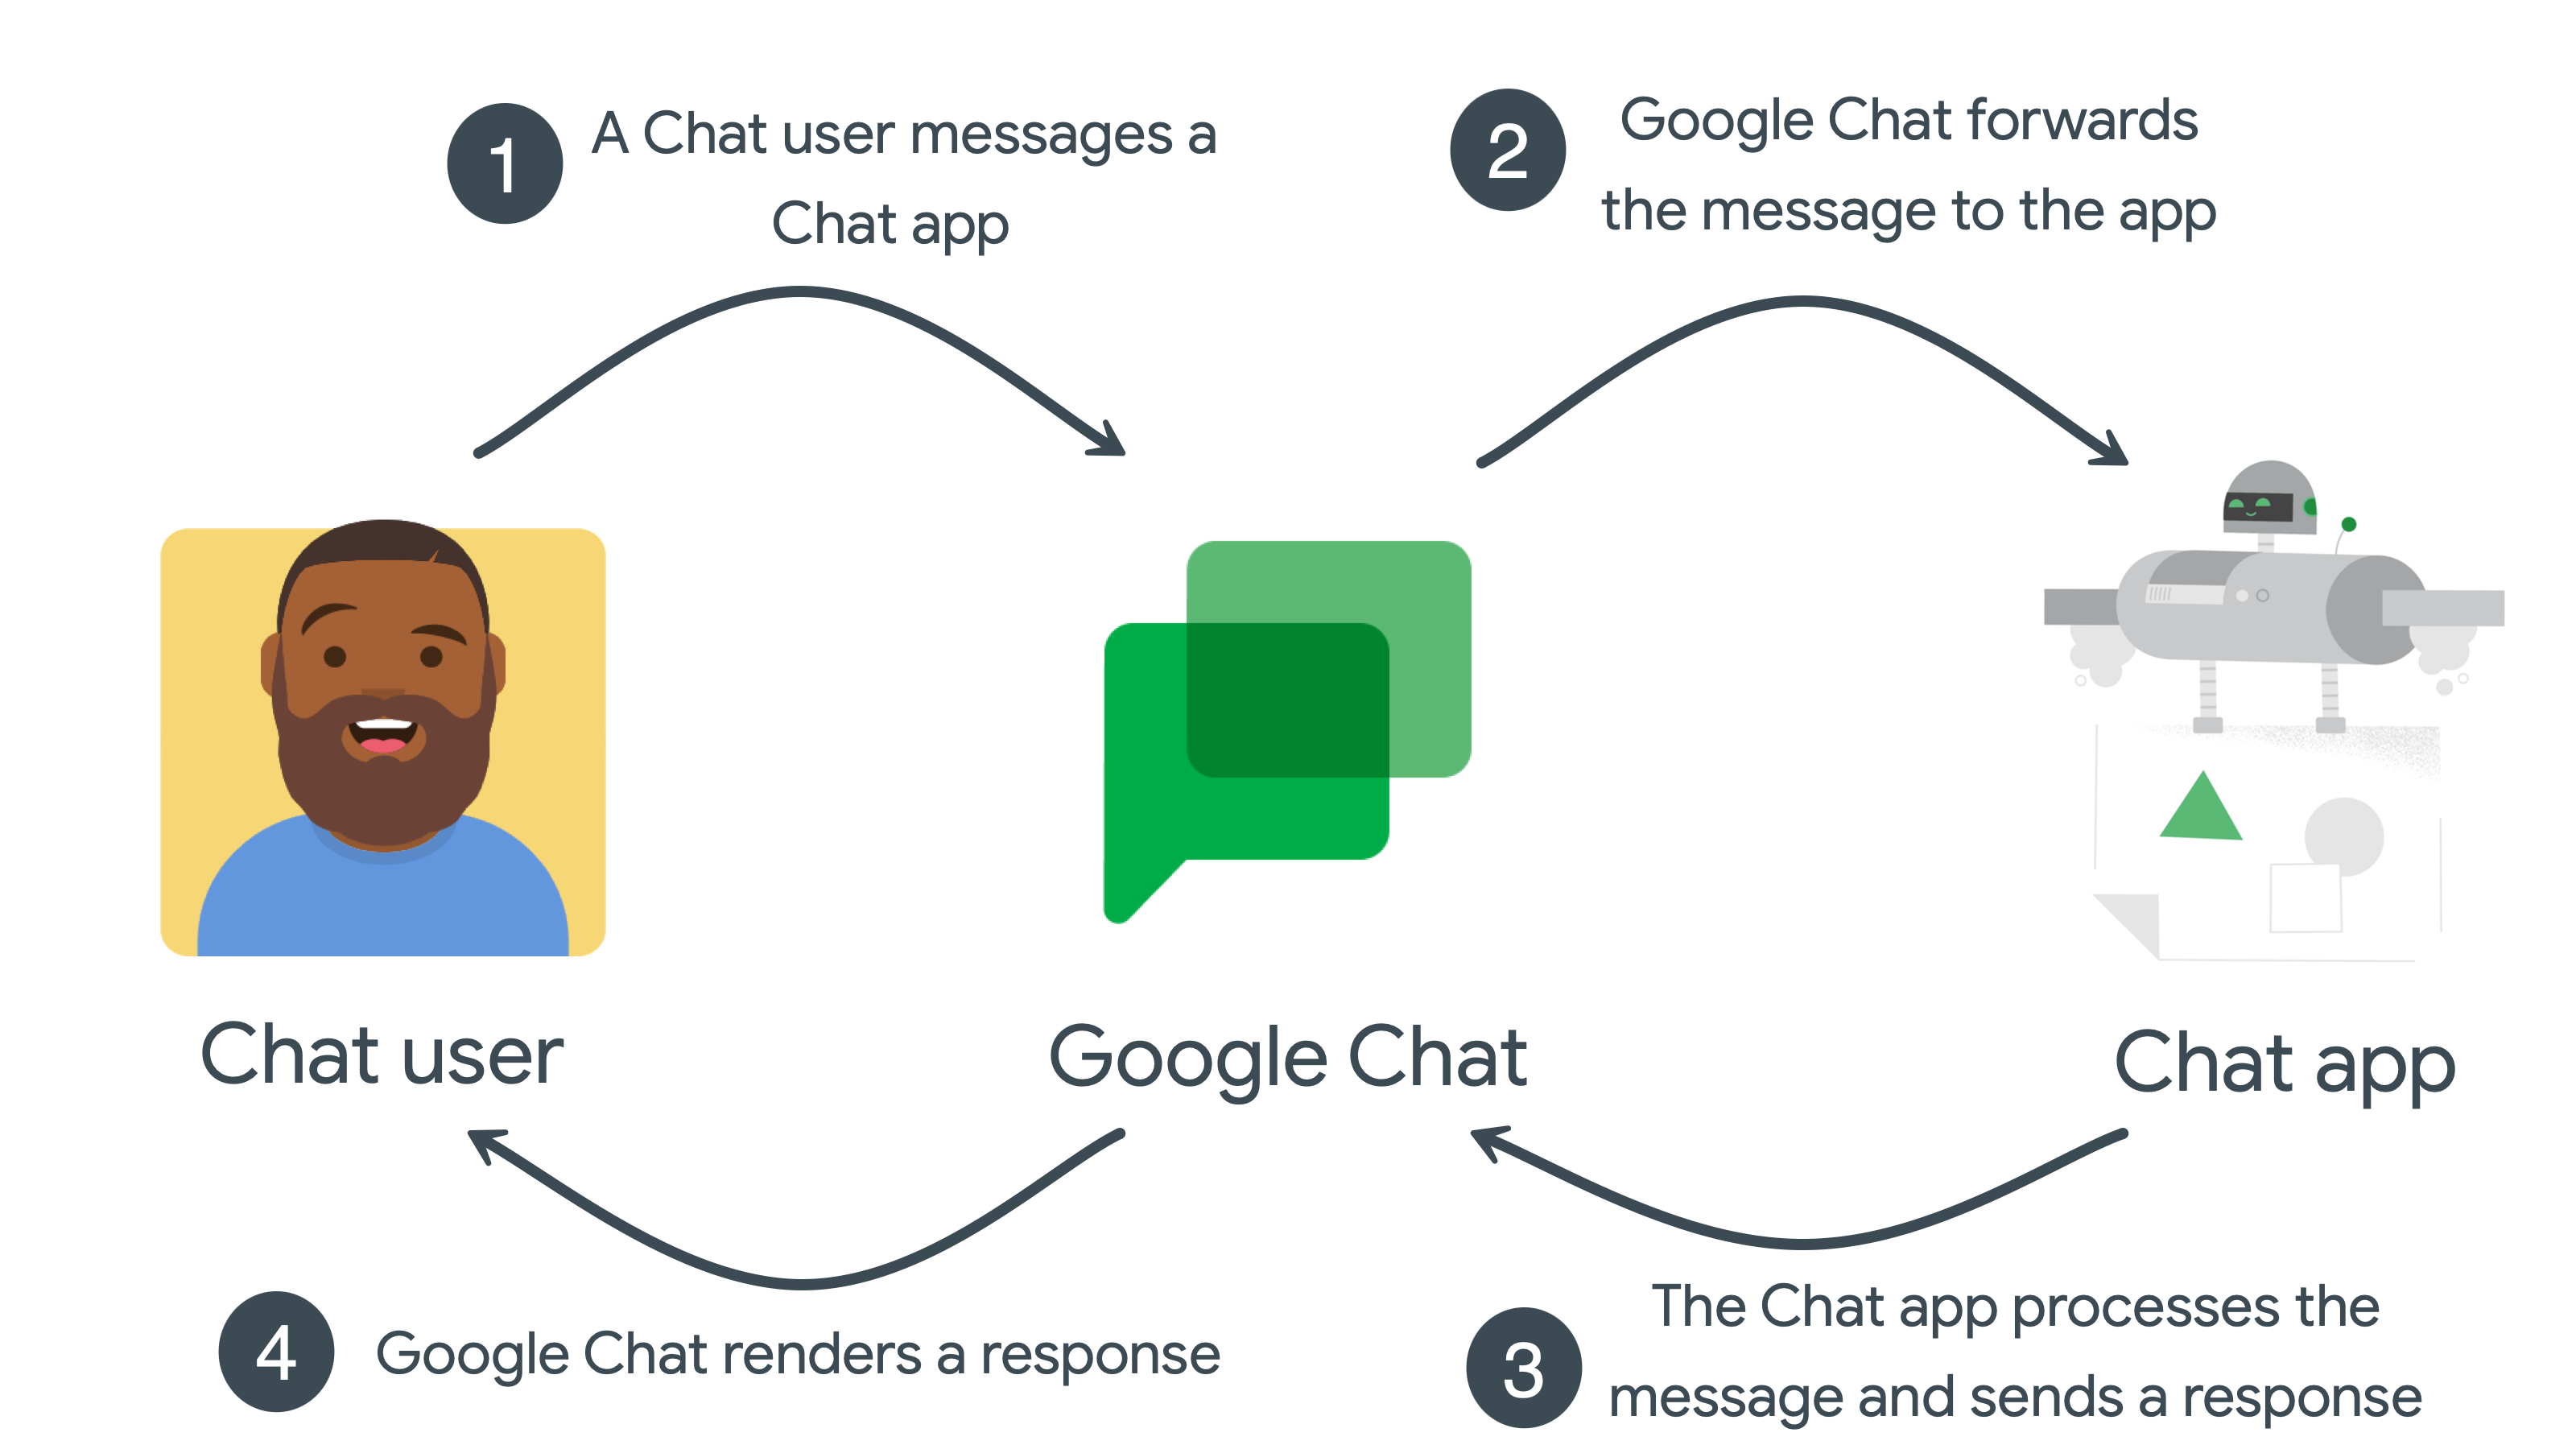 Zdarzenia interakcji z aplikacją Google Chat nie wymagają autoryzacji